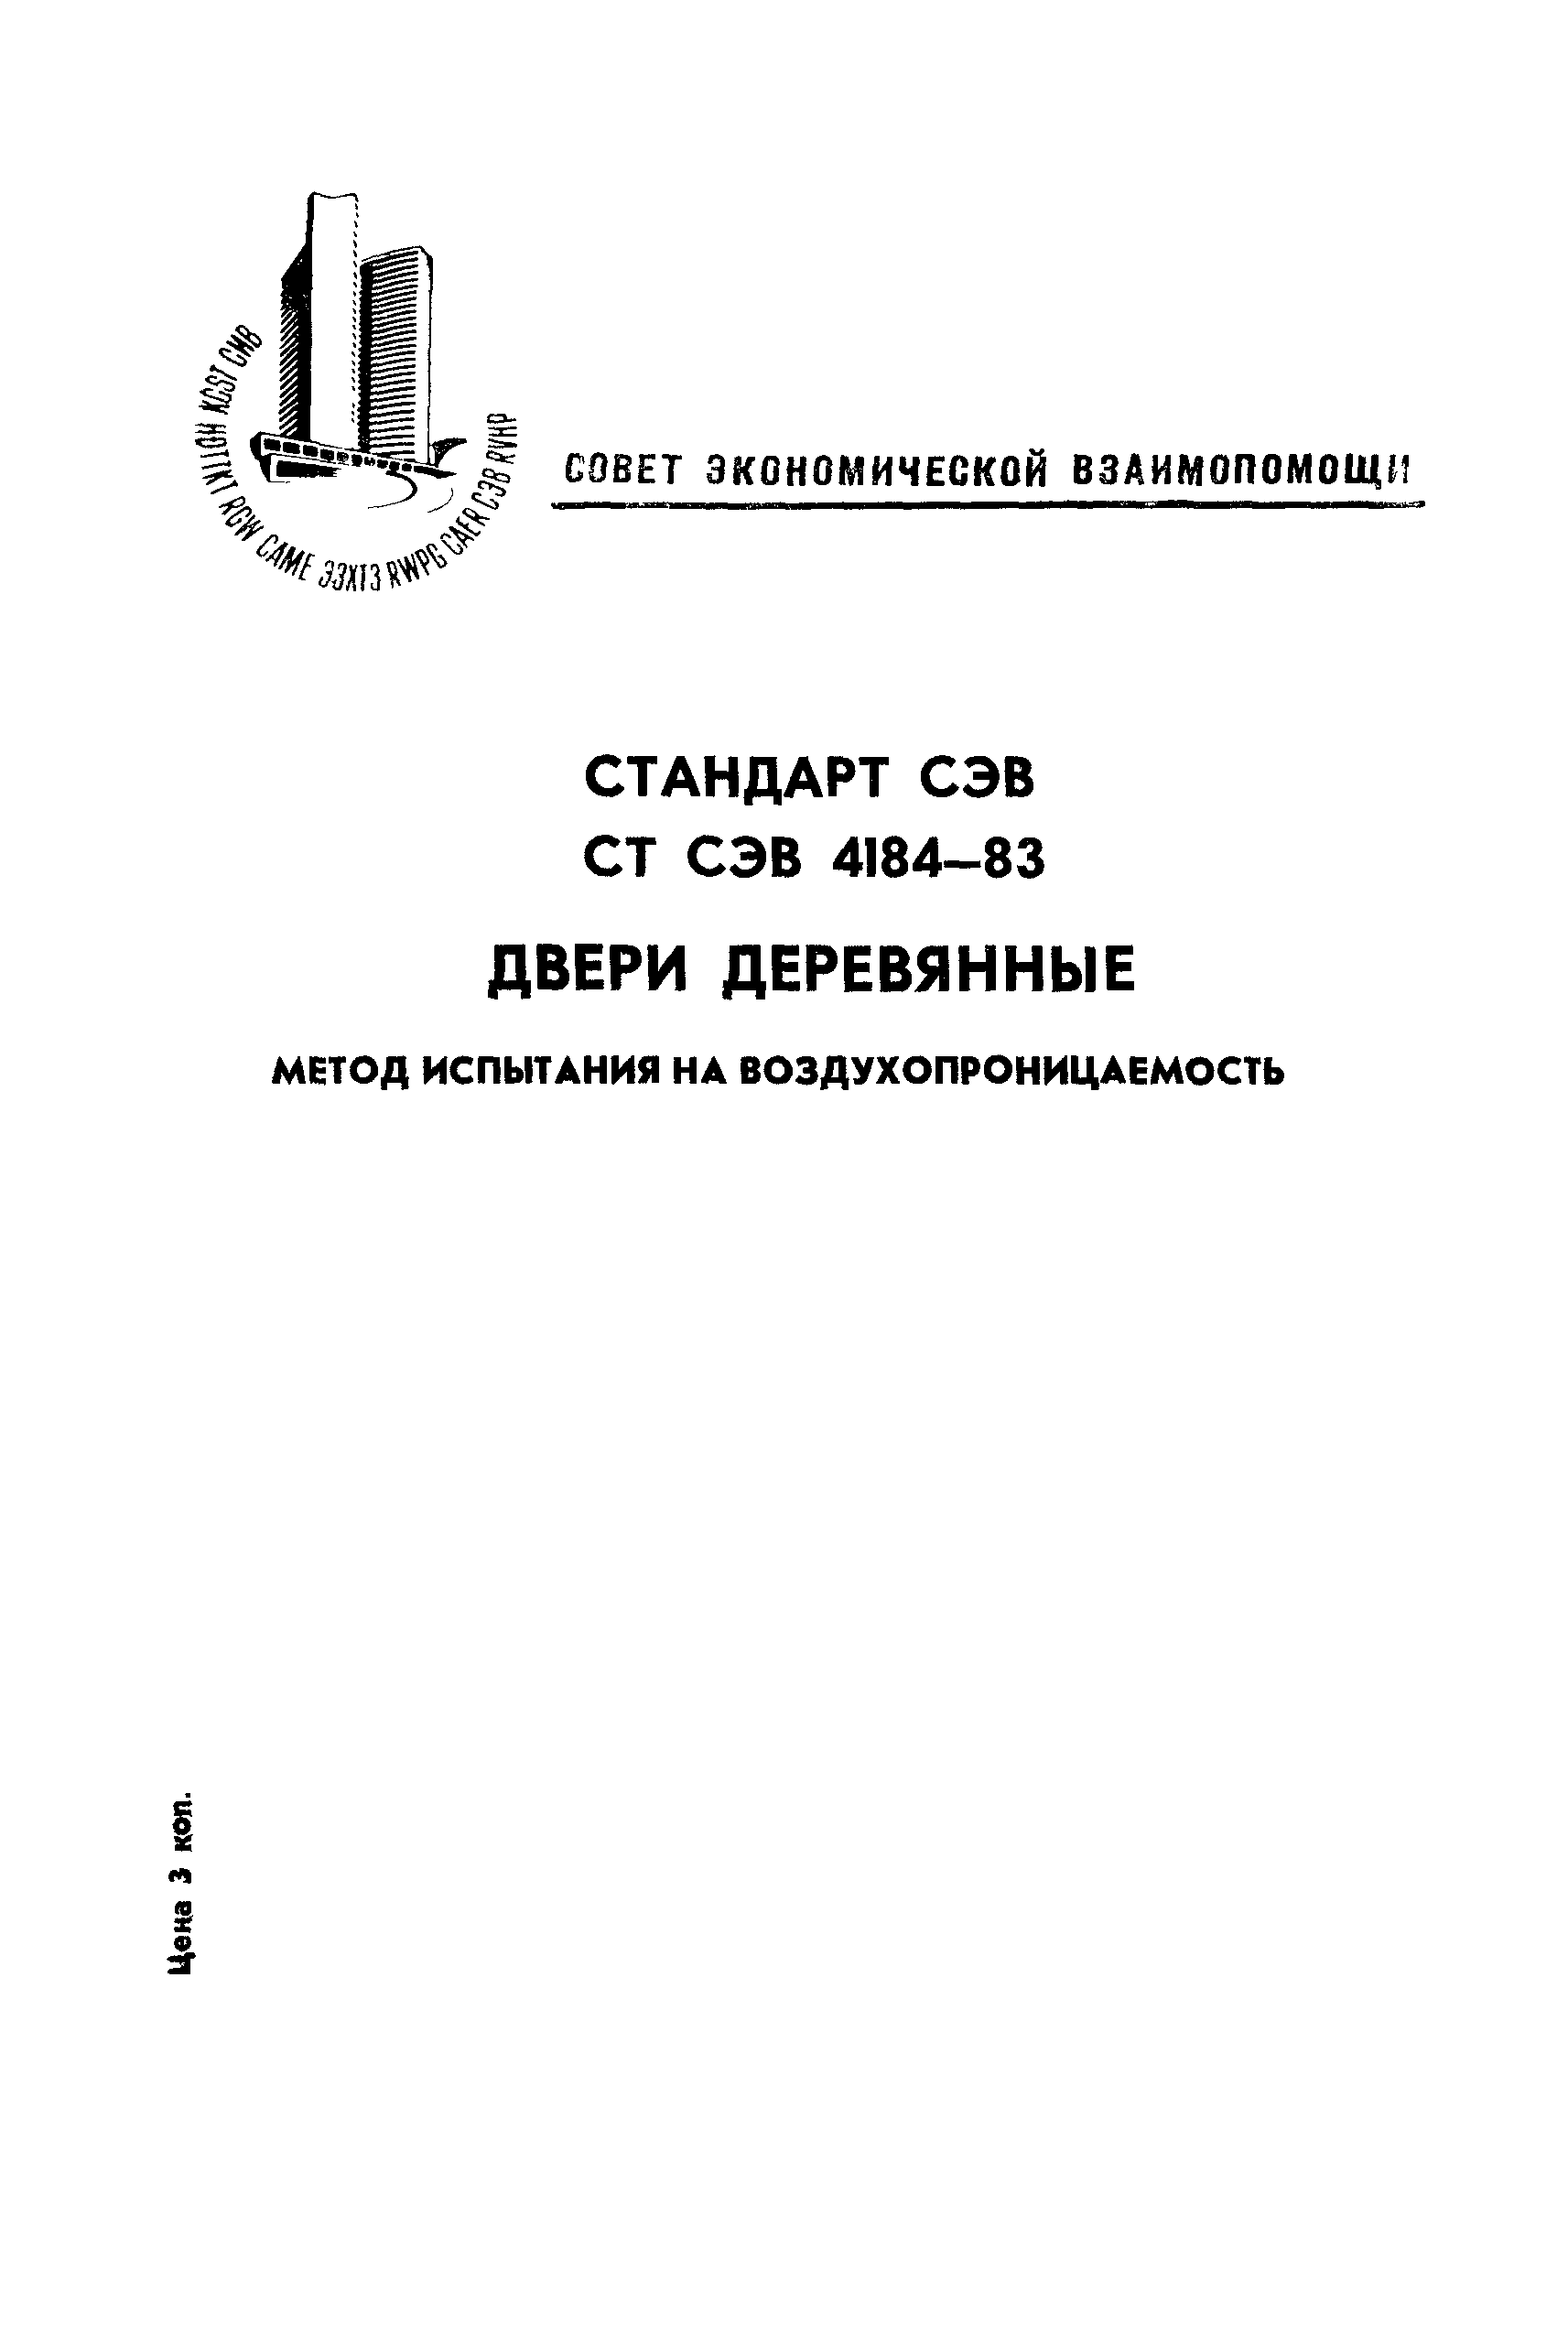 СТ СЭВ 4184-83